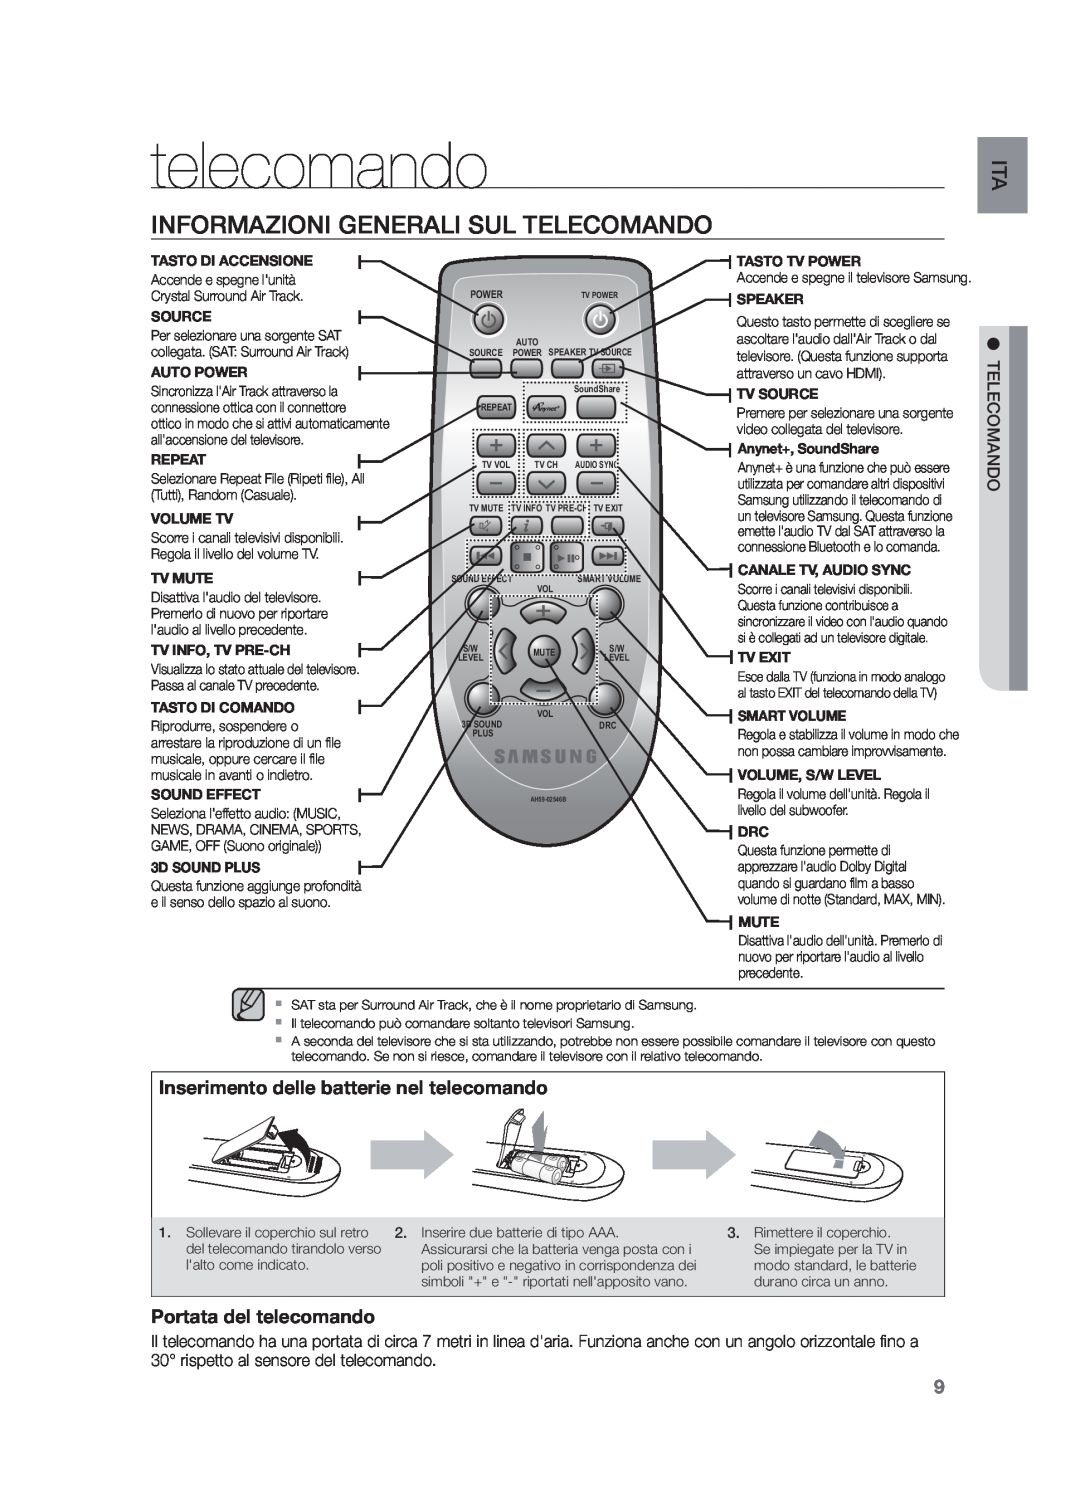 Samsung HW-F551/XN, HW-F551/EN manual Informazioni Generali Sul Telecomando, Inserimento delle batterie nel telecomando 